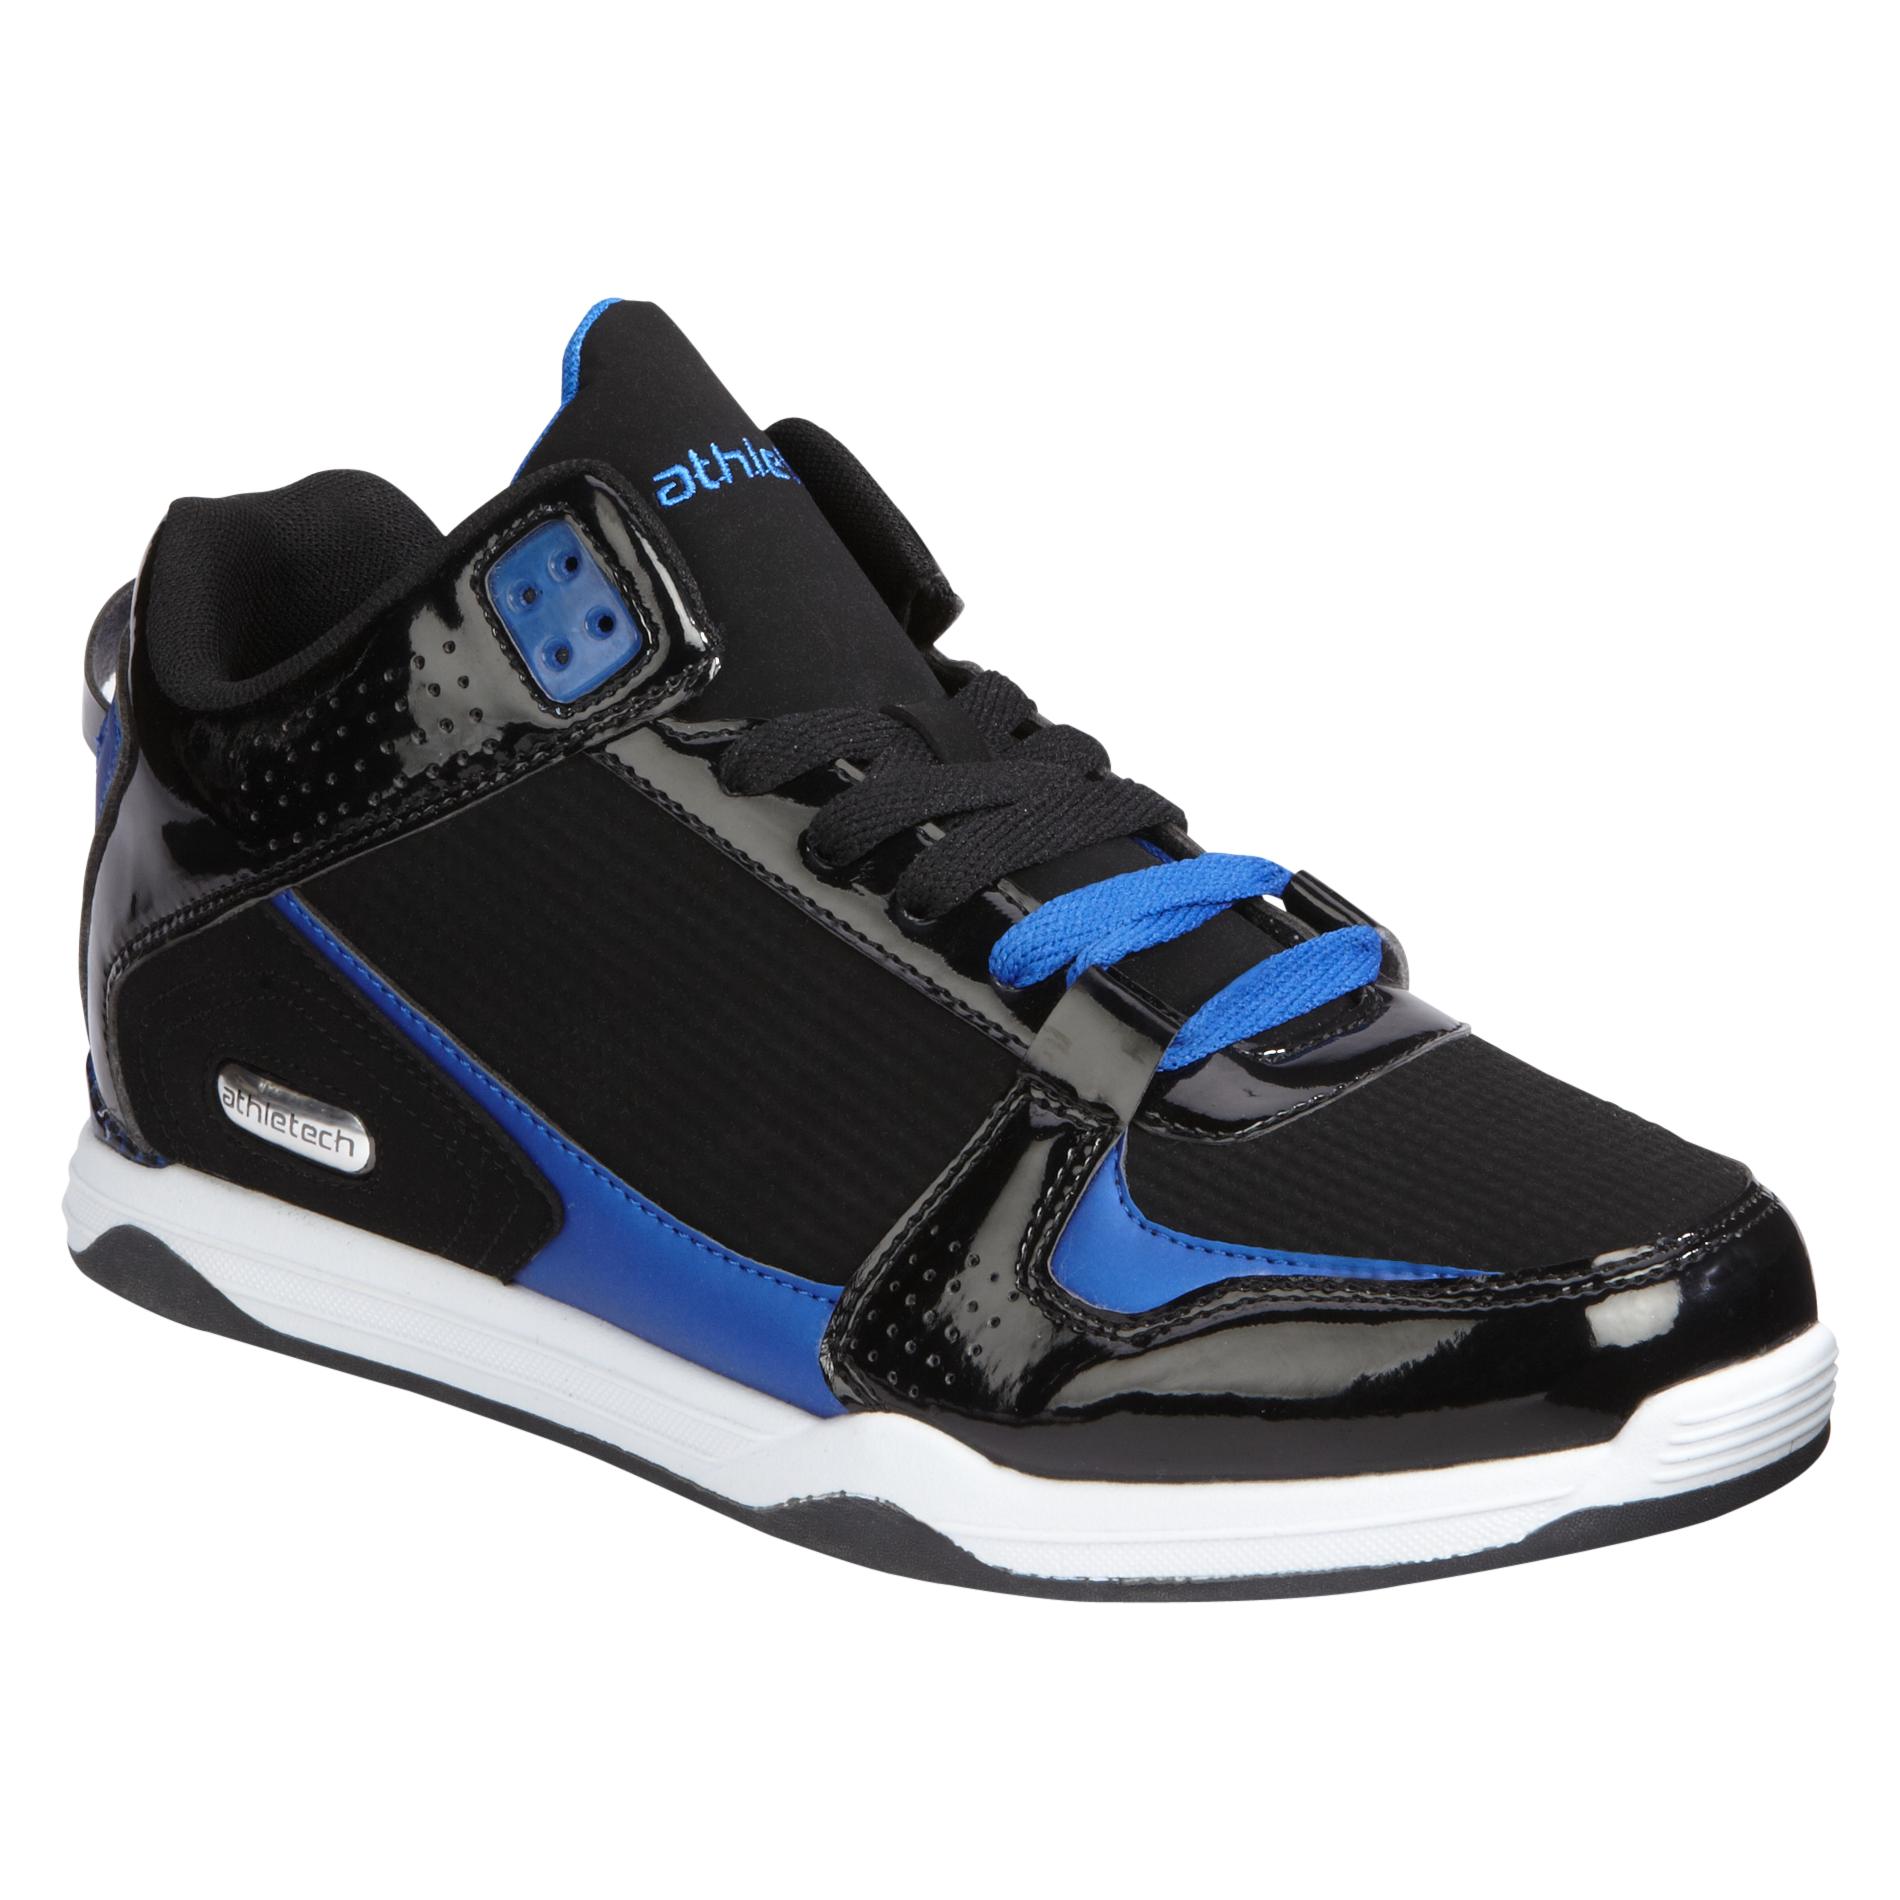 Athletech Men's Athletic Shoe Plunge - Black/Blue